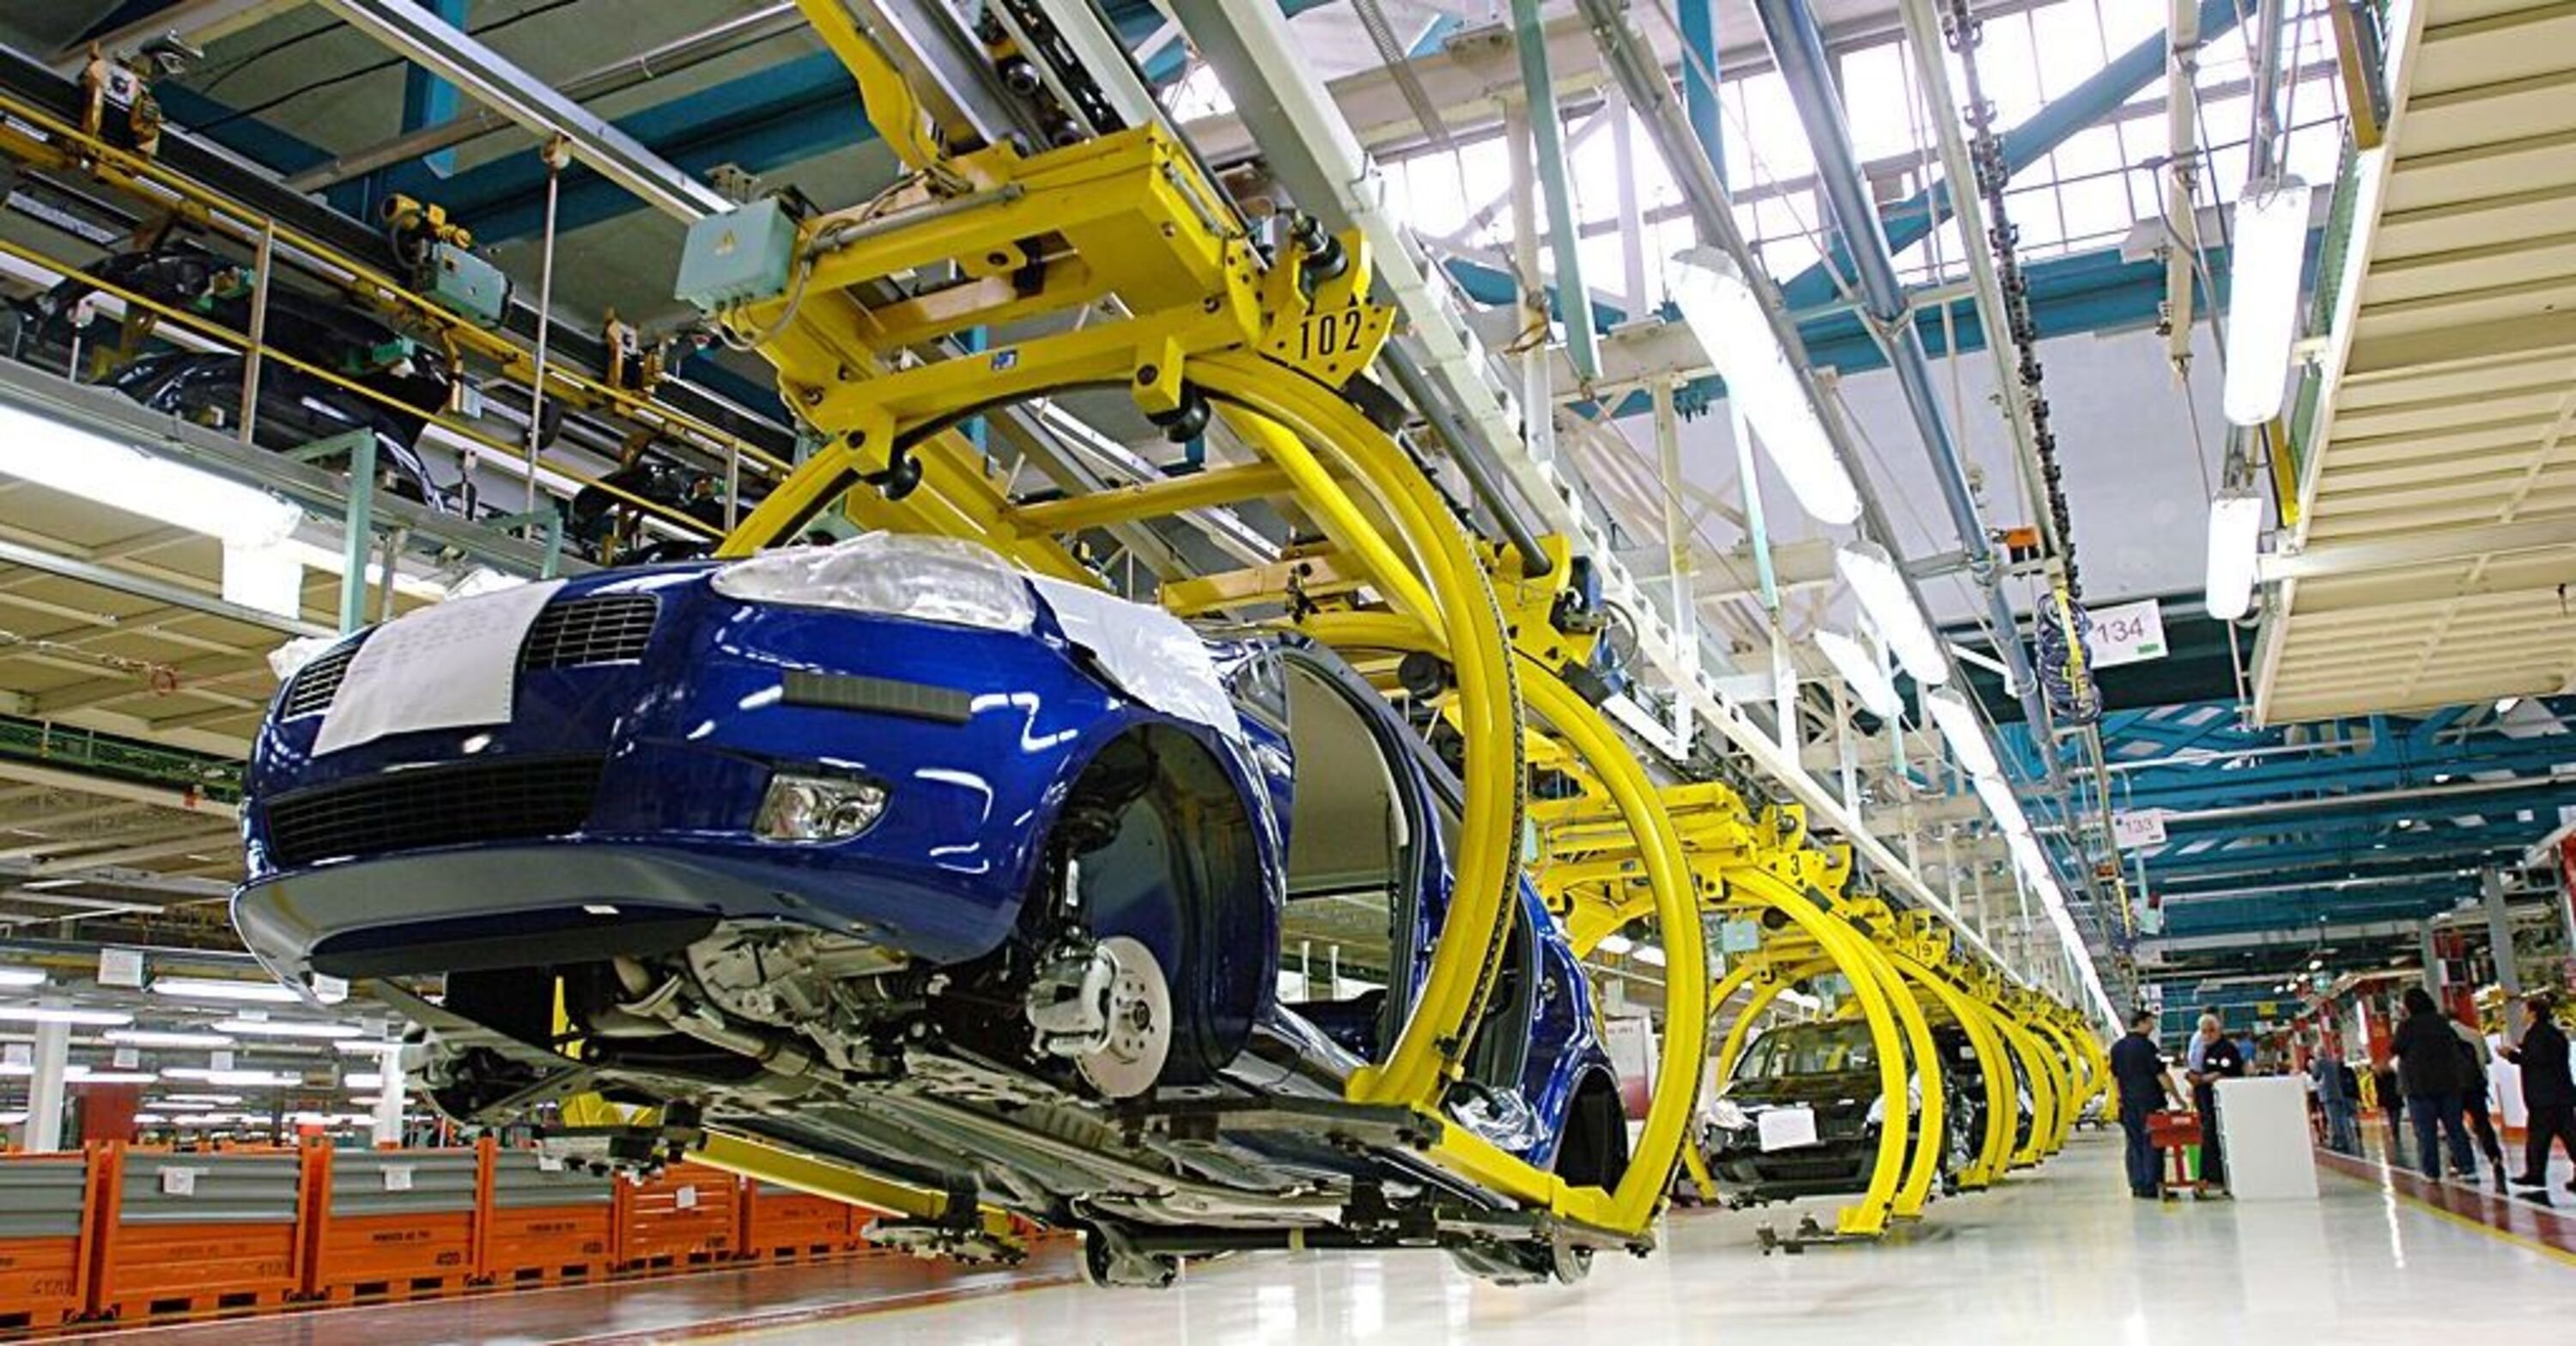 Produzione industriale e Automotive, Istat: dopo il ribasso ora un miglioramento?